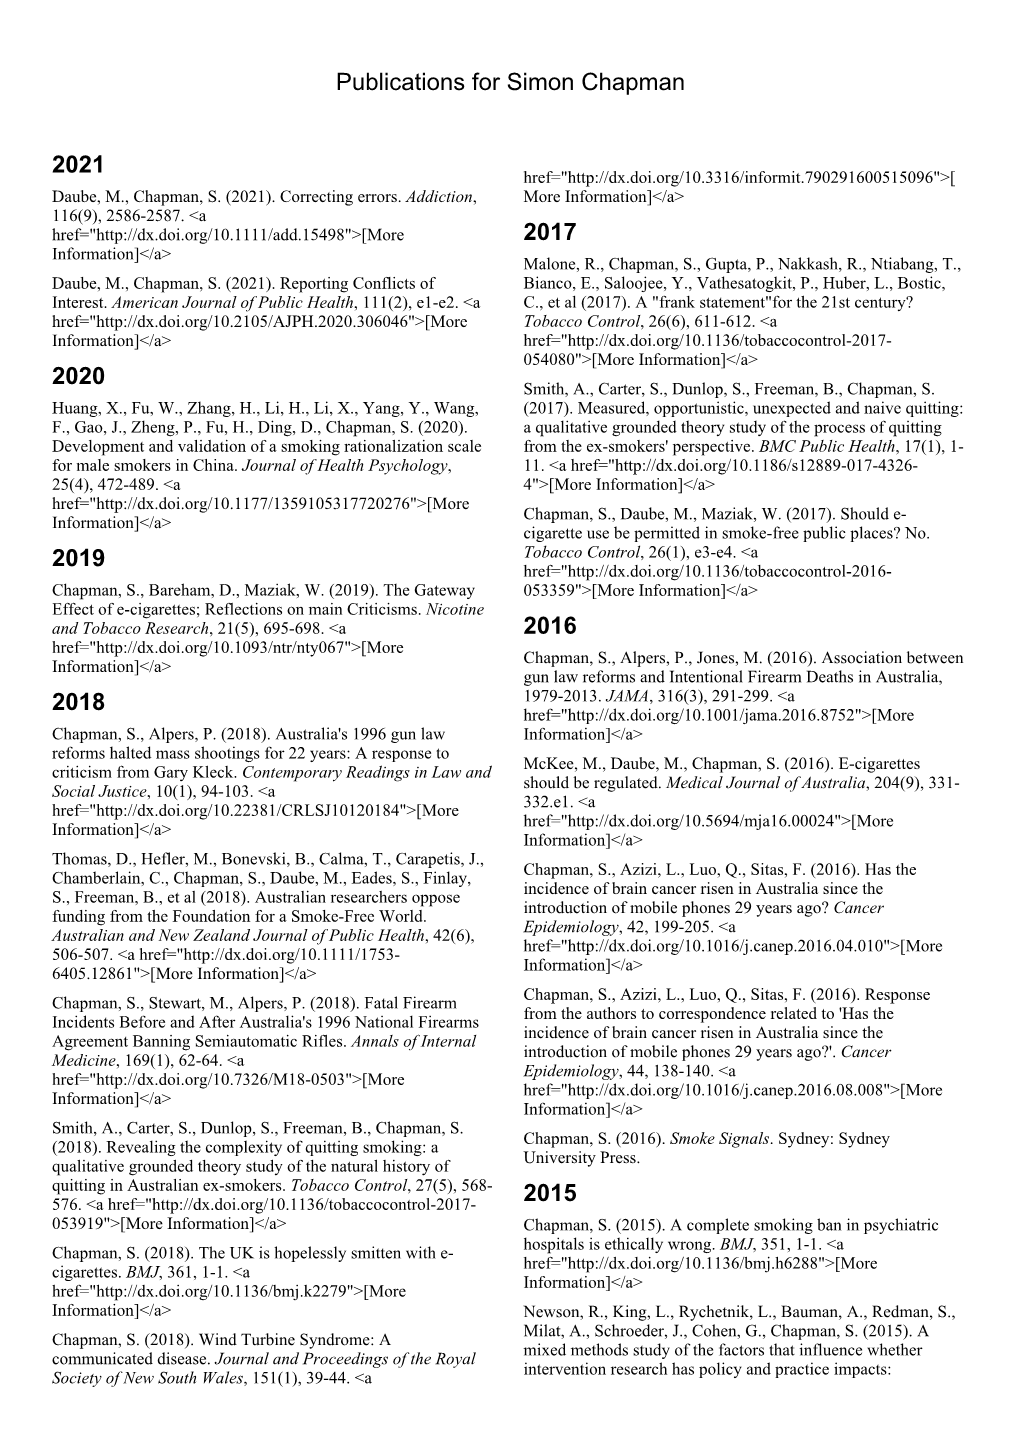 Publications for Simon Chapman 2021